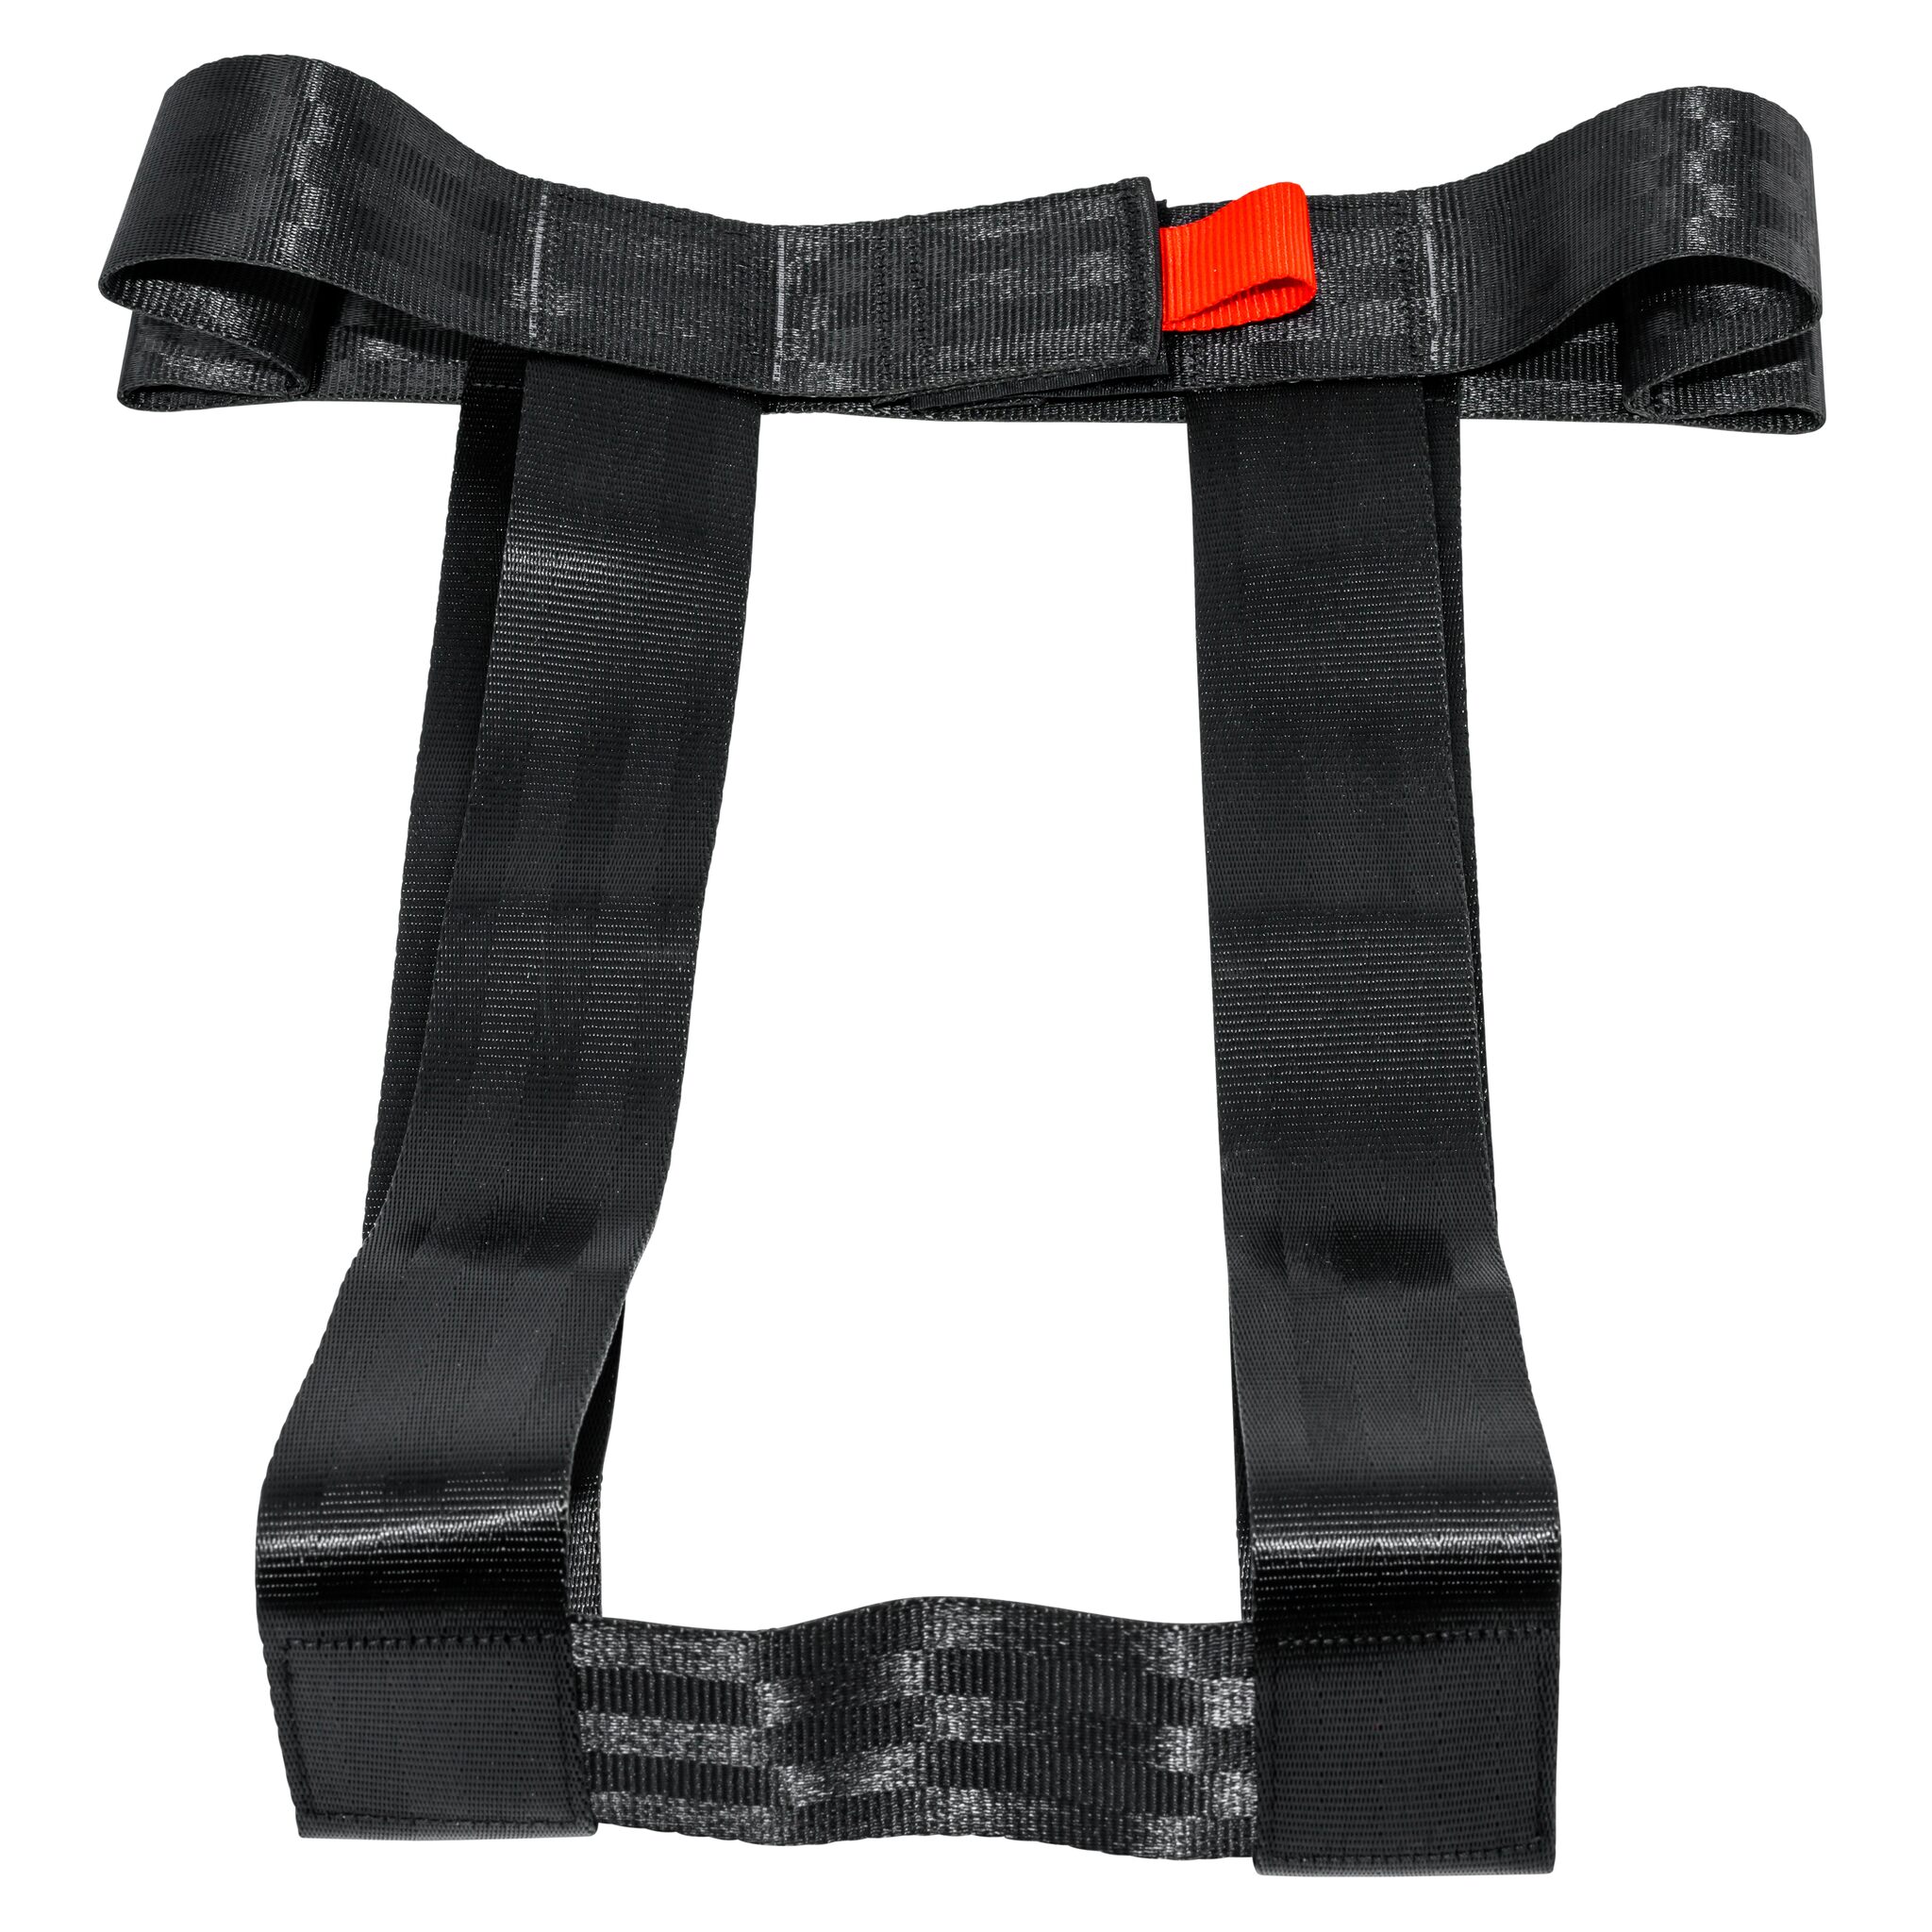 Strap holder for SECU 17 solid vest